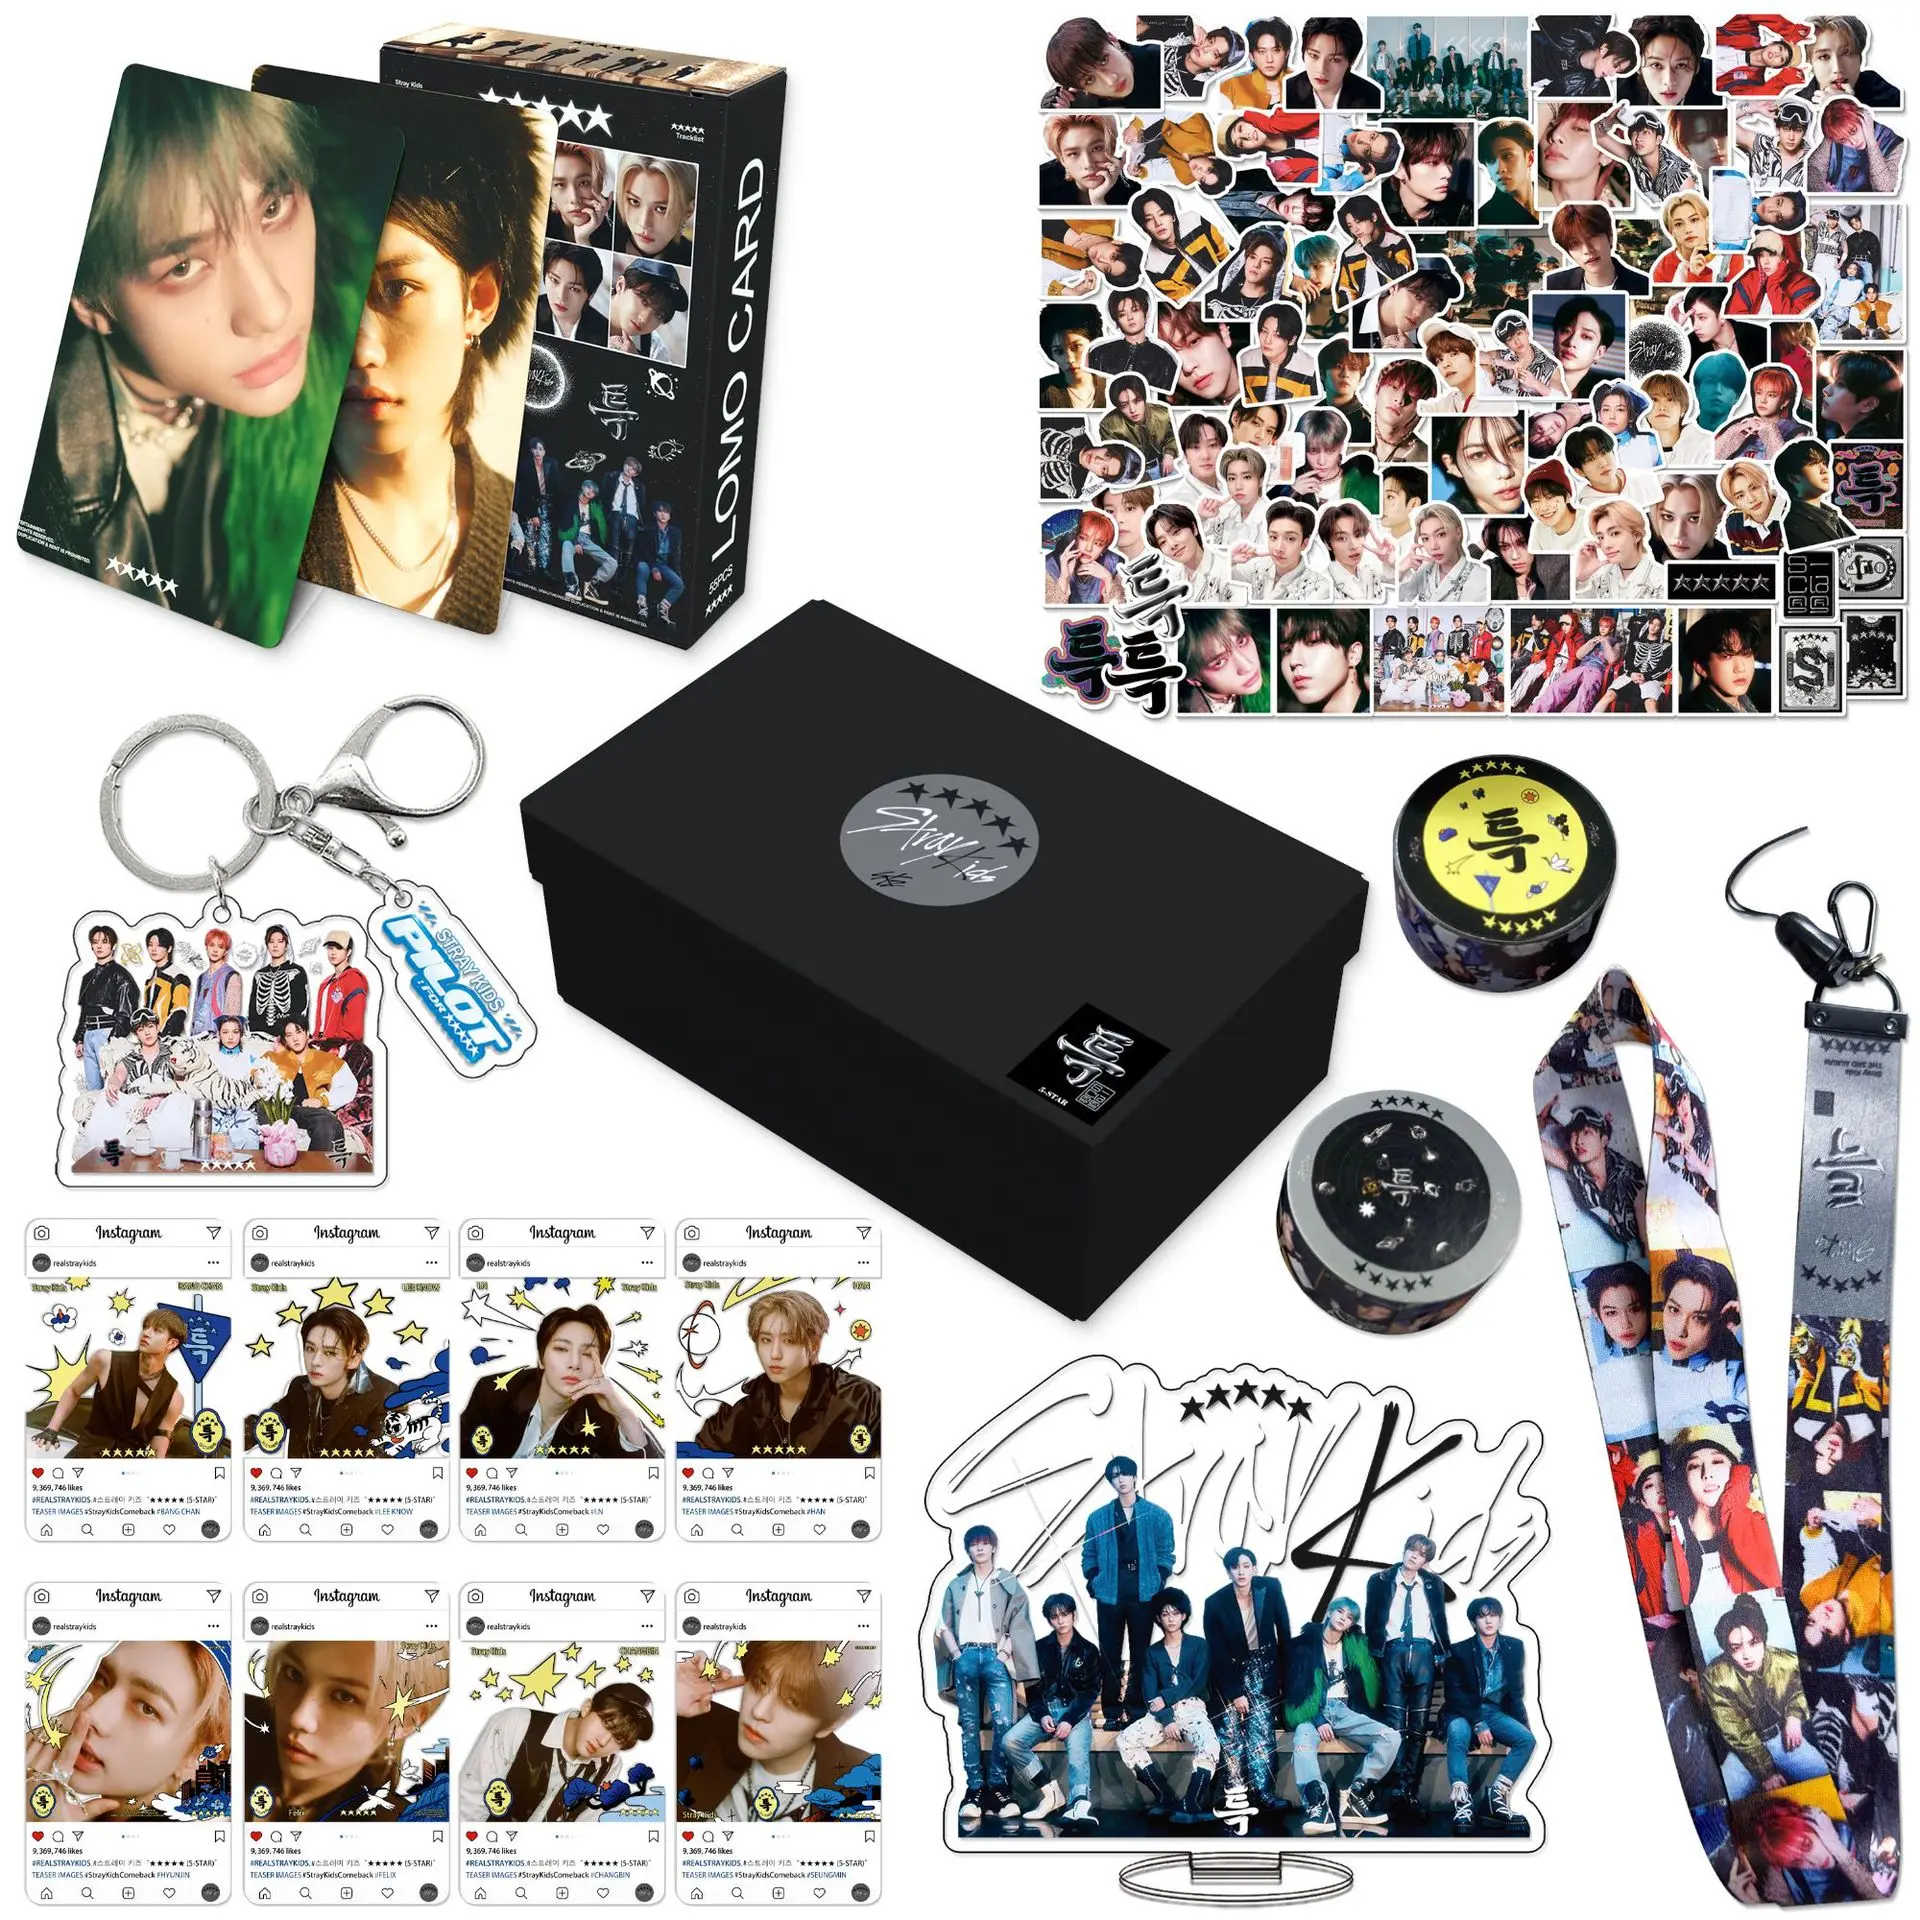 

Kpop бродячие дети новый альбом 5 звезд Подарочная коробка набор MAXIDENT Photocards Lomo Card Sticker брелоки со шнурком Fans коллекционные подарки